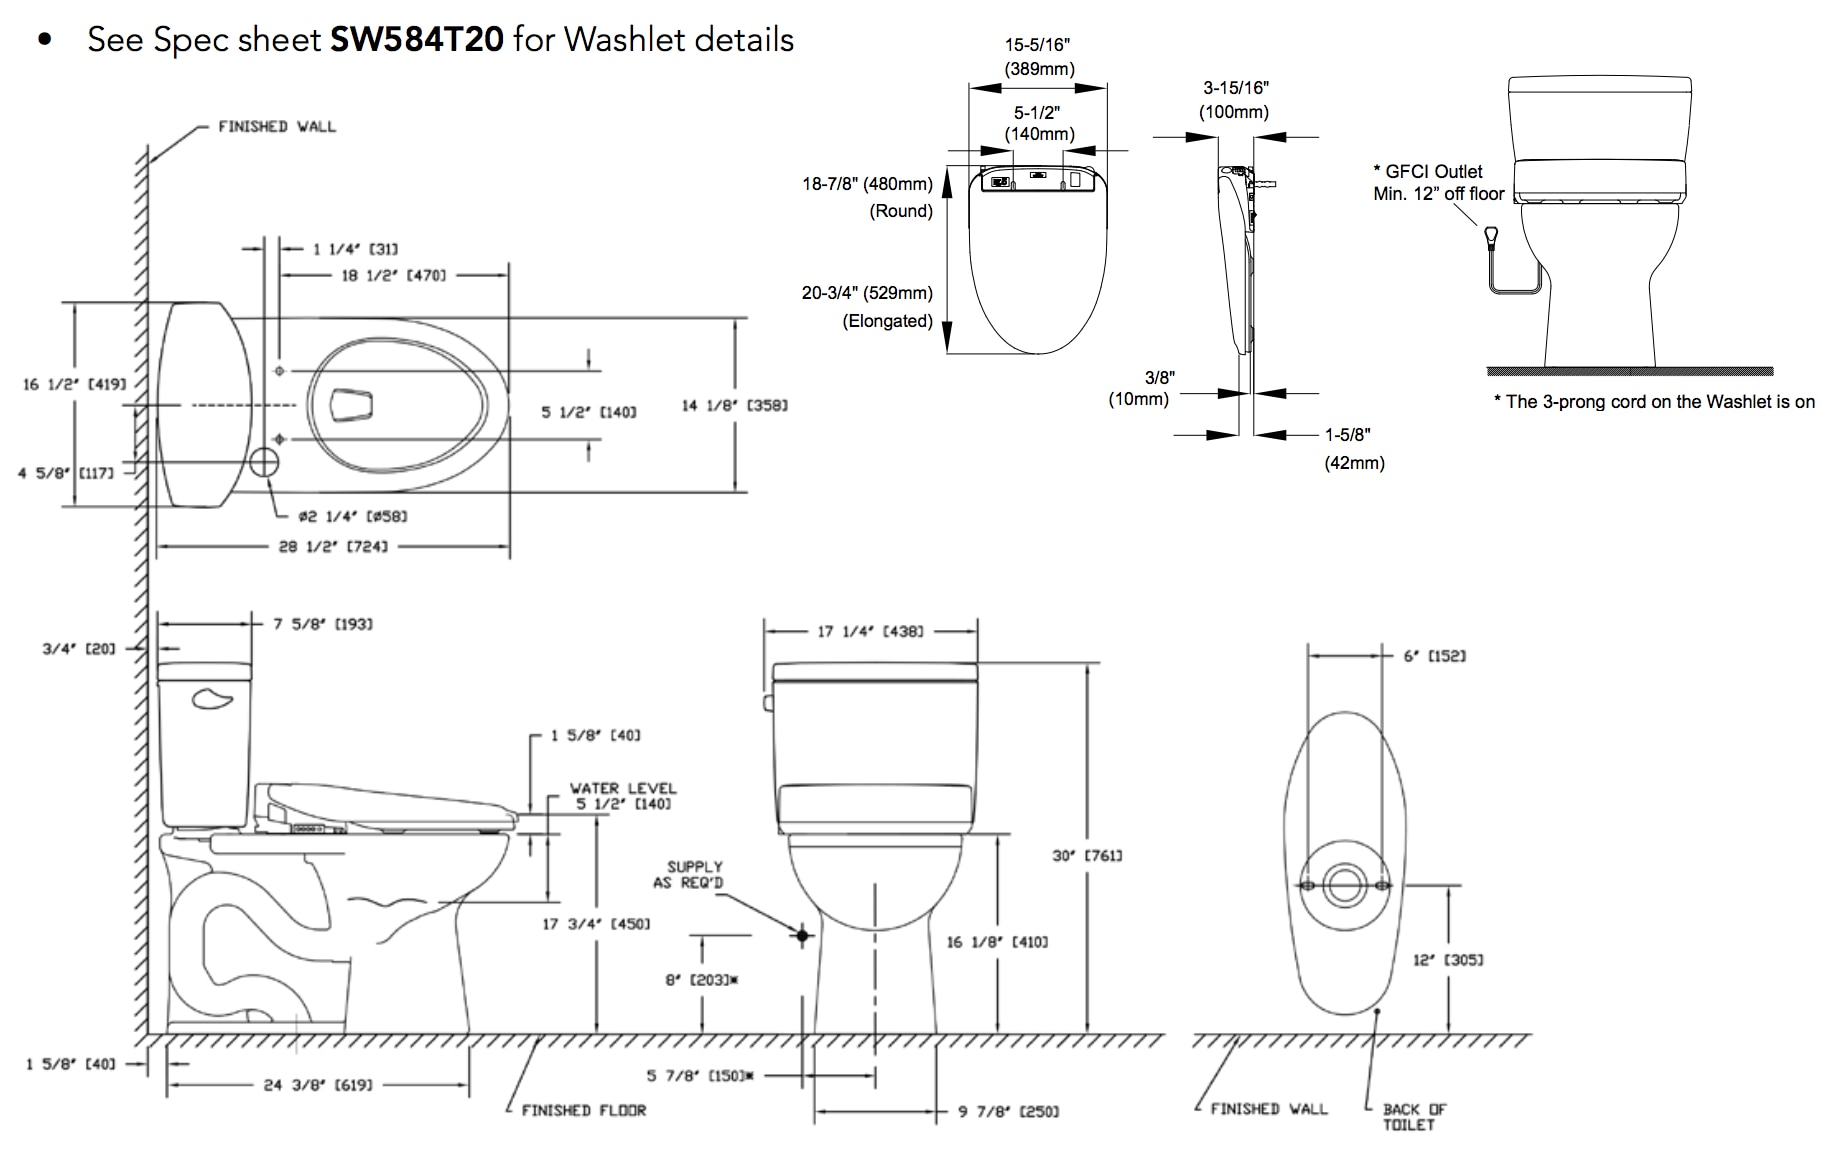 drake-ii-washlet-s350e-two-piece-toilet-1.28-gpf-diagram.png